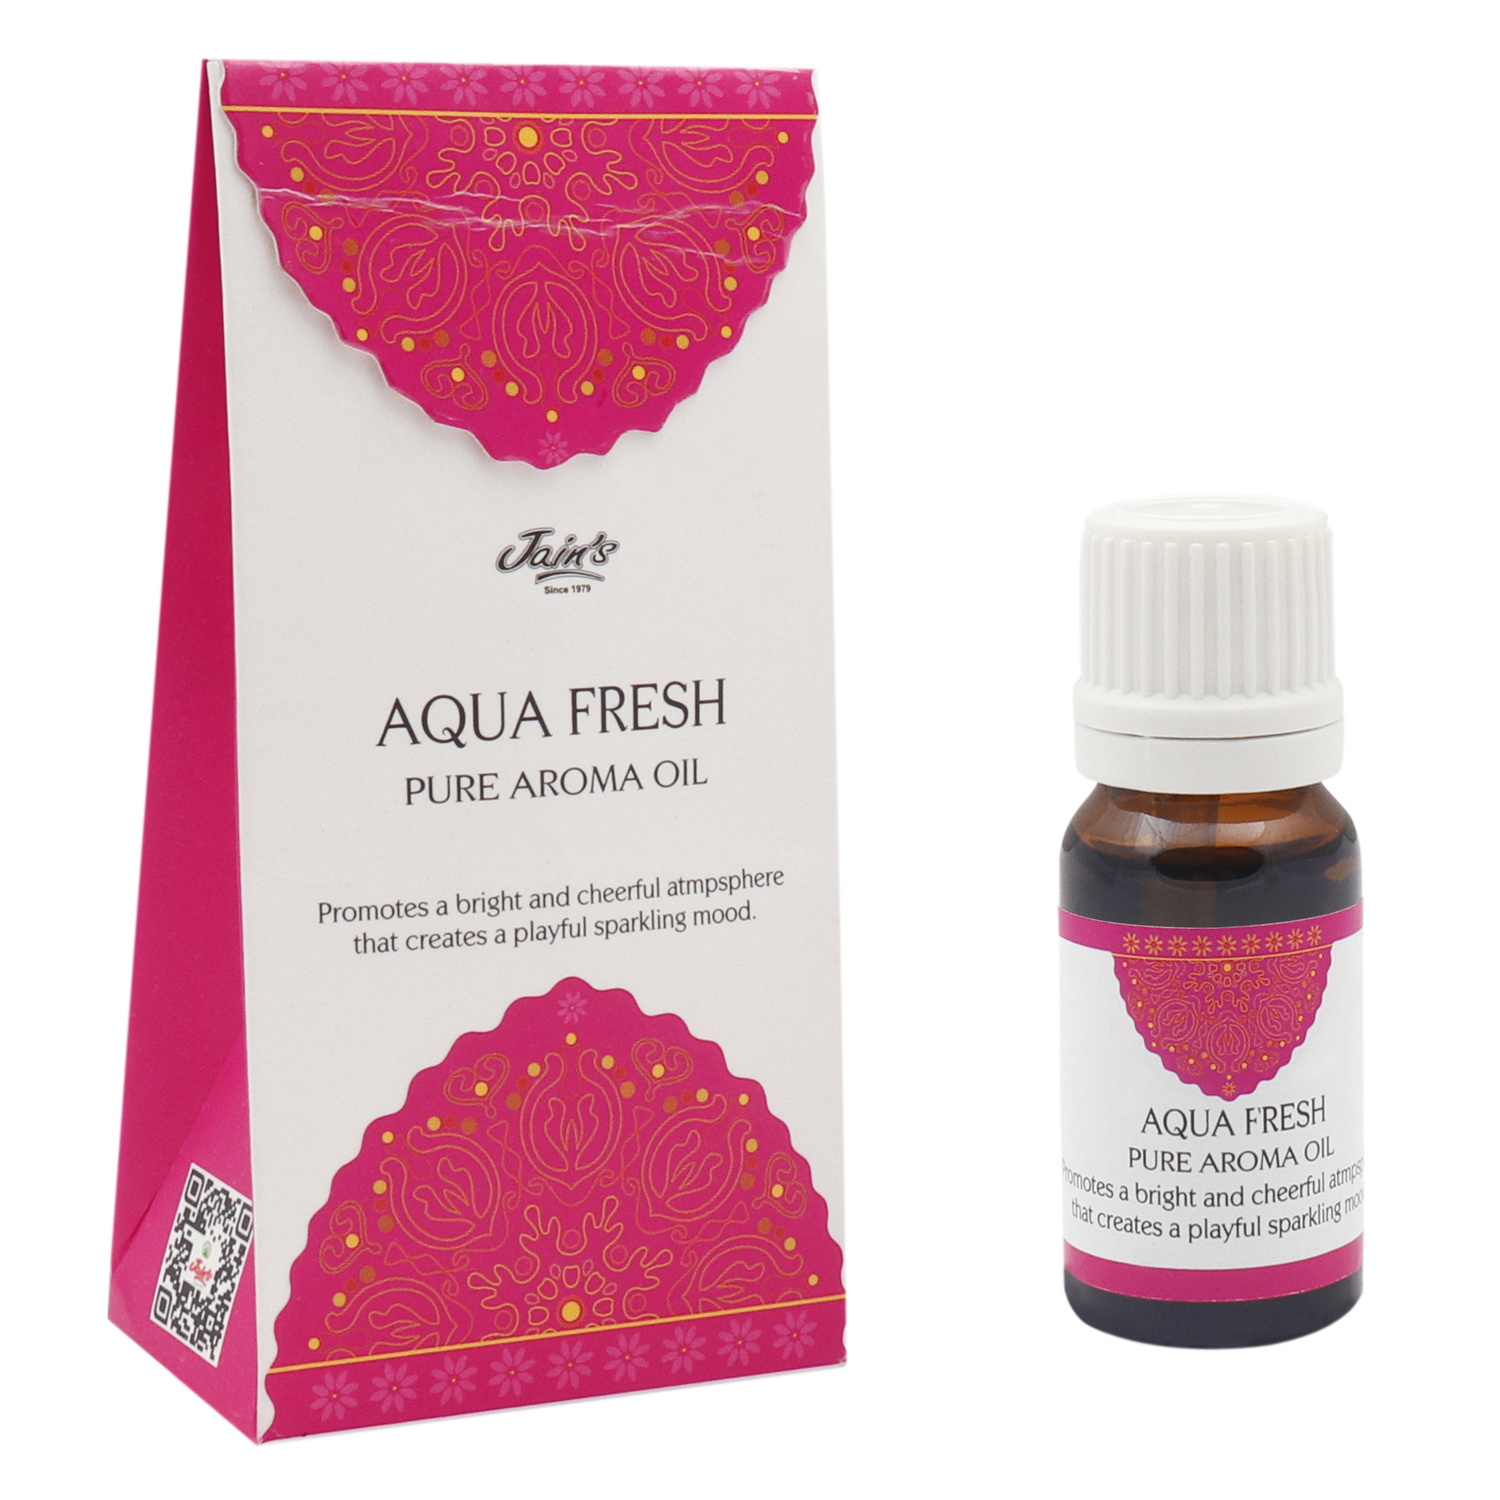 Jain's Aqua Fresh Aroma Oil / Diffuser Oil